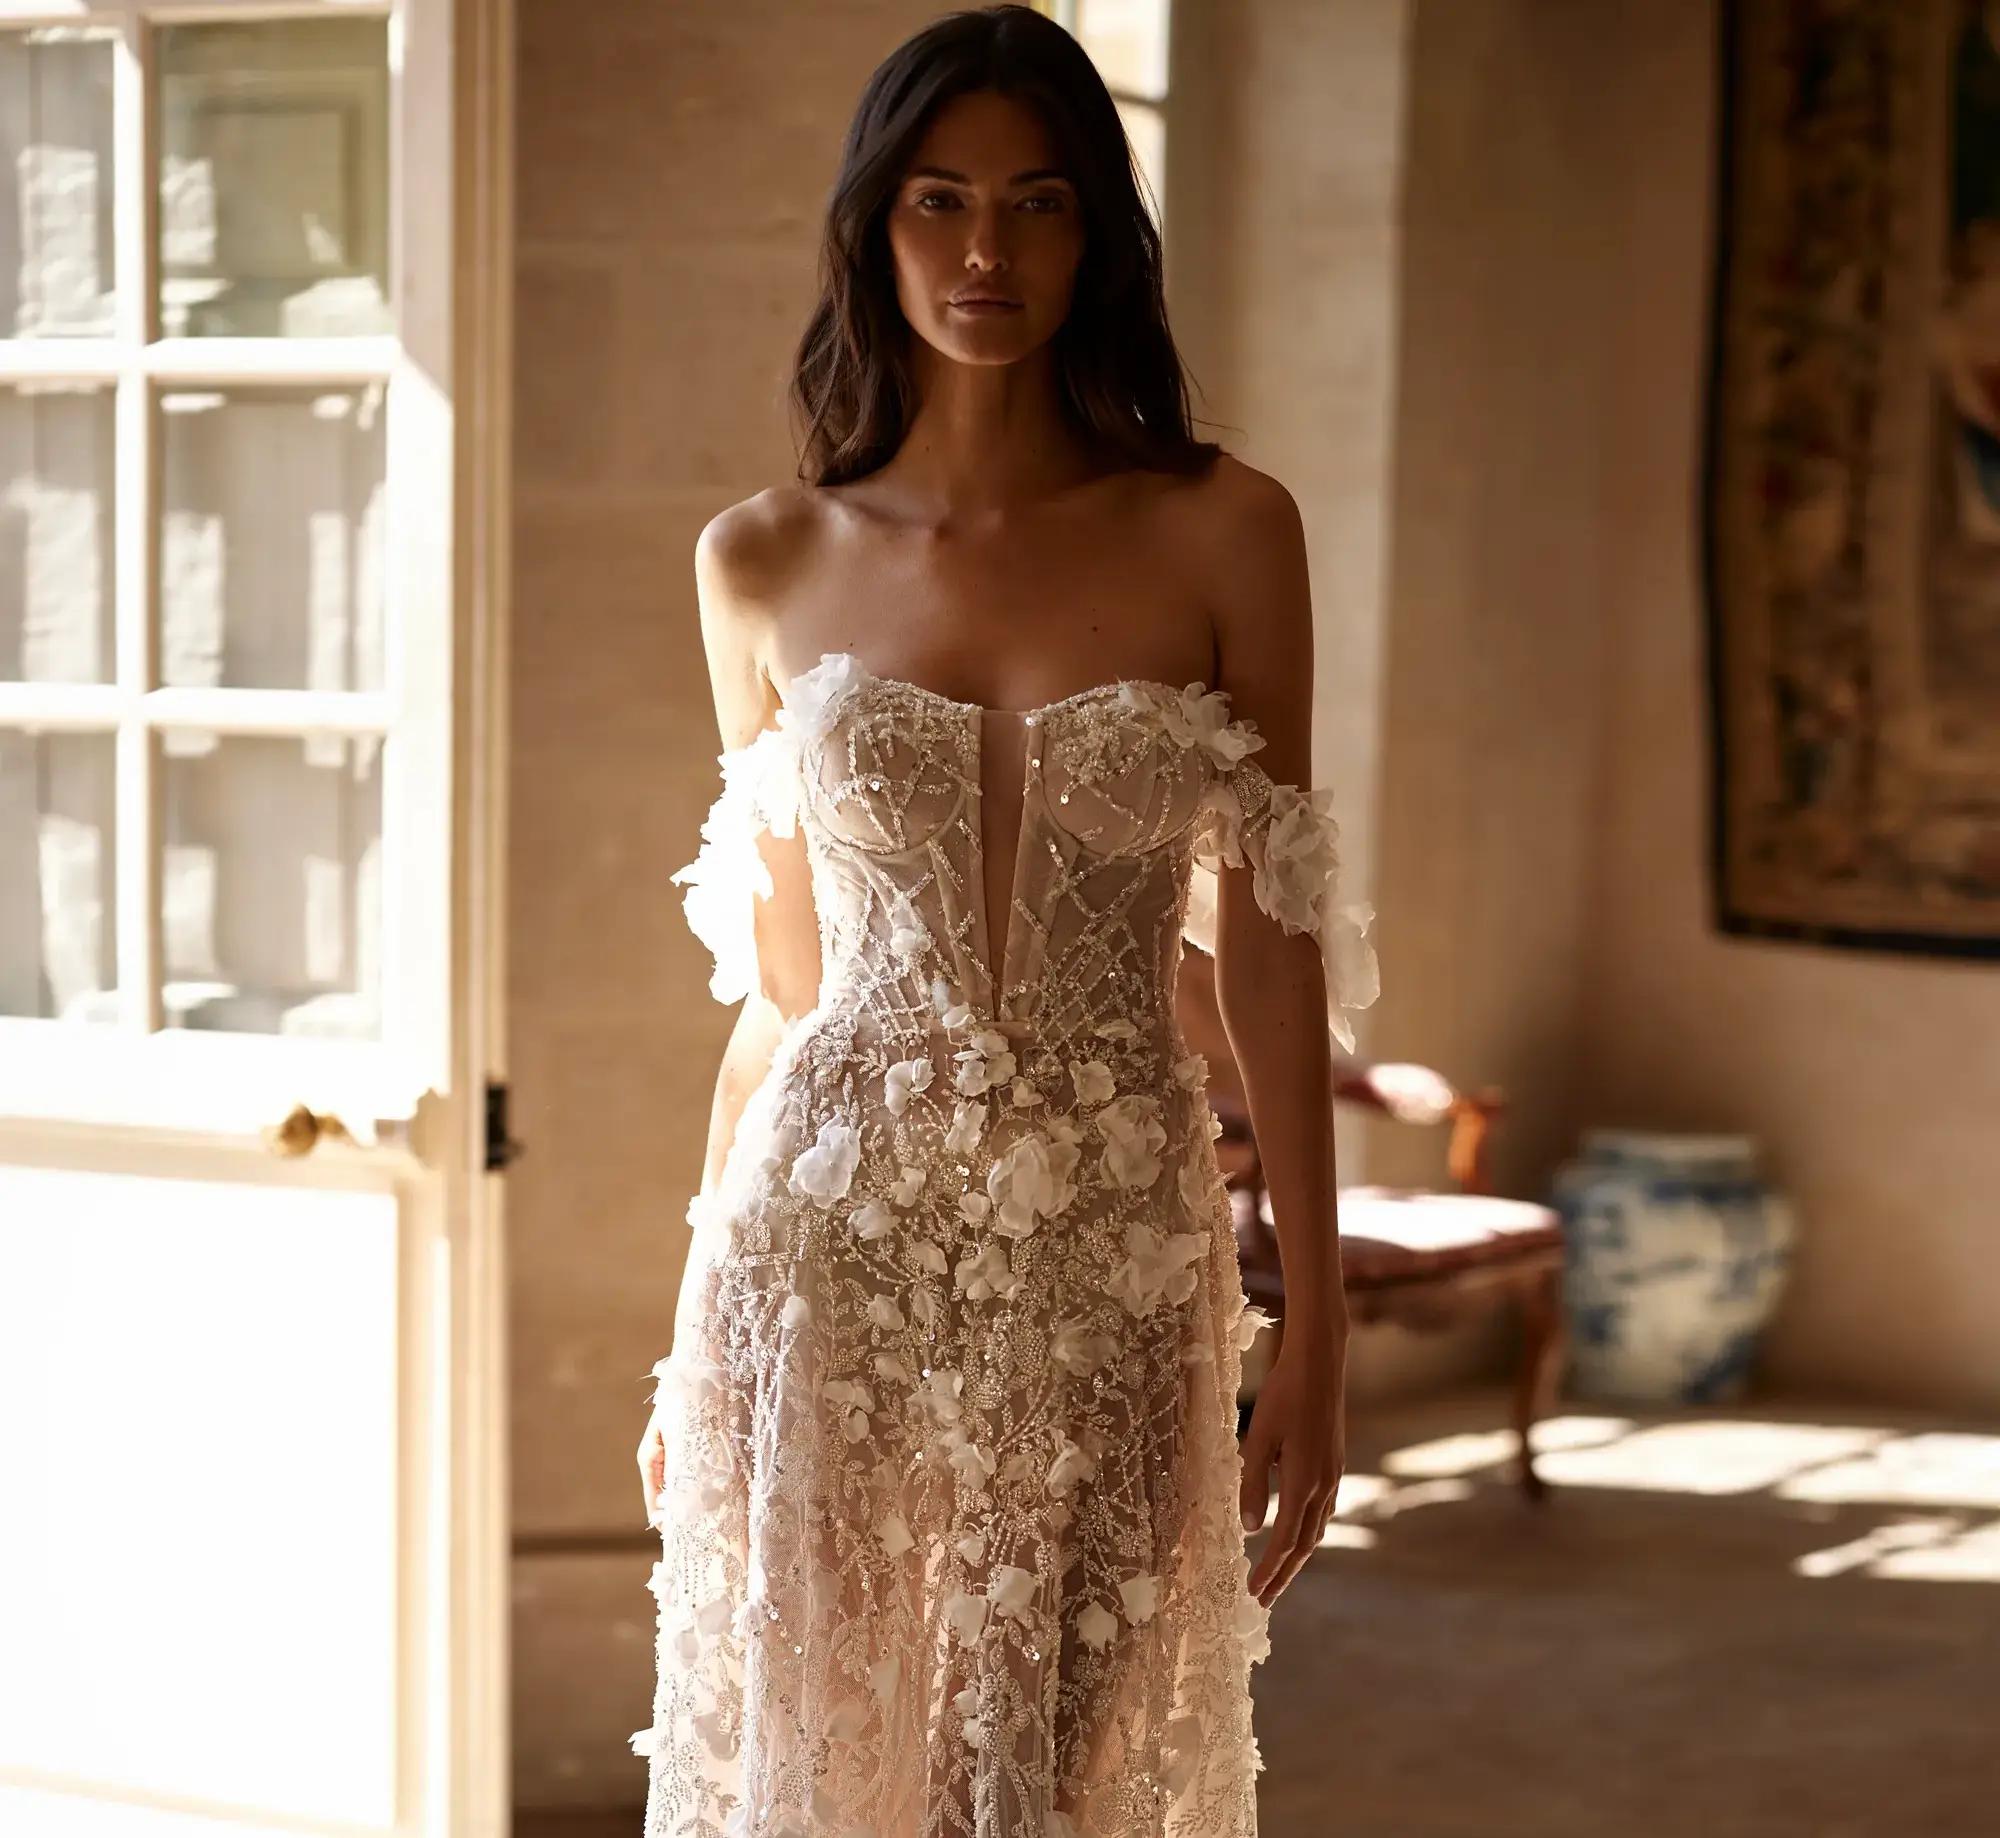 Model in Milla Nova Bridal dress